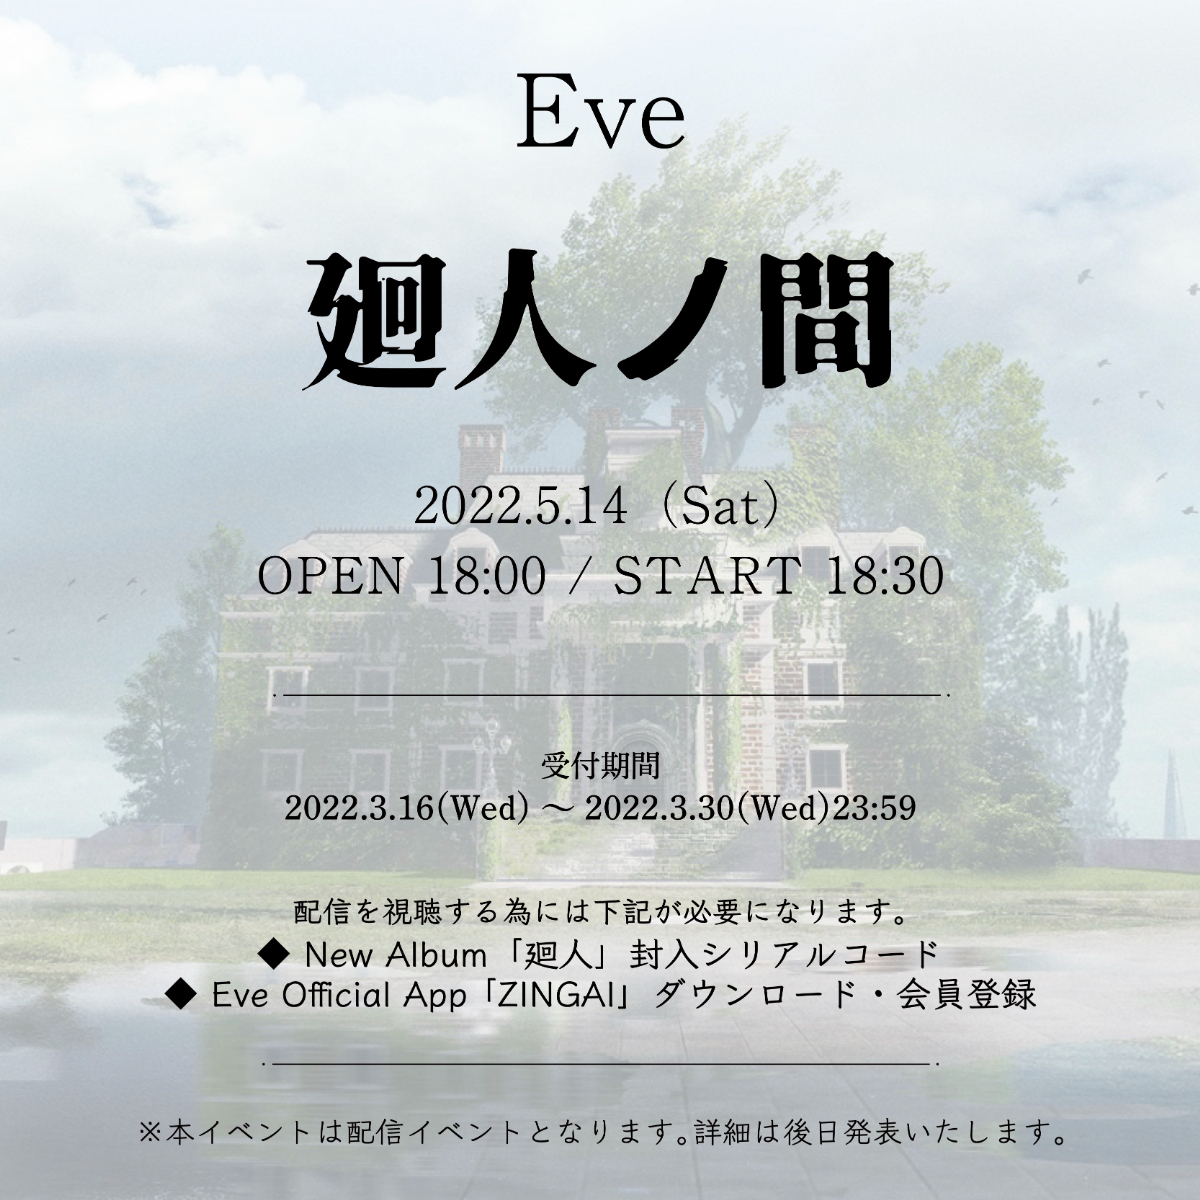 Eve、オンラインイベント『廻人ノ間』を開催 | SPICE - エンタメ特化型 